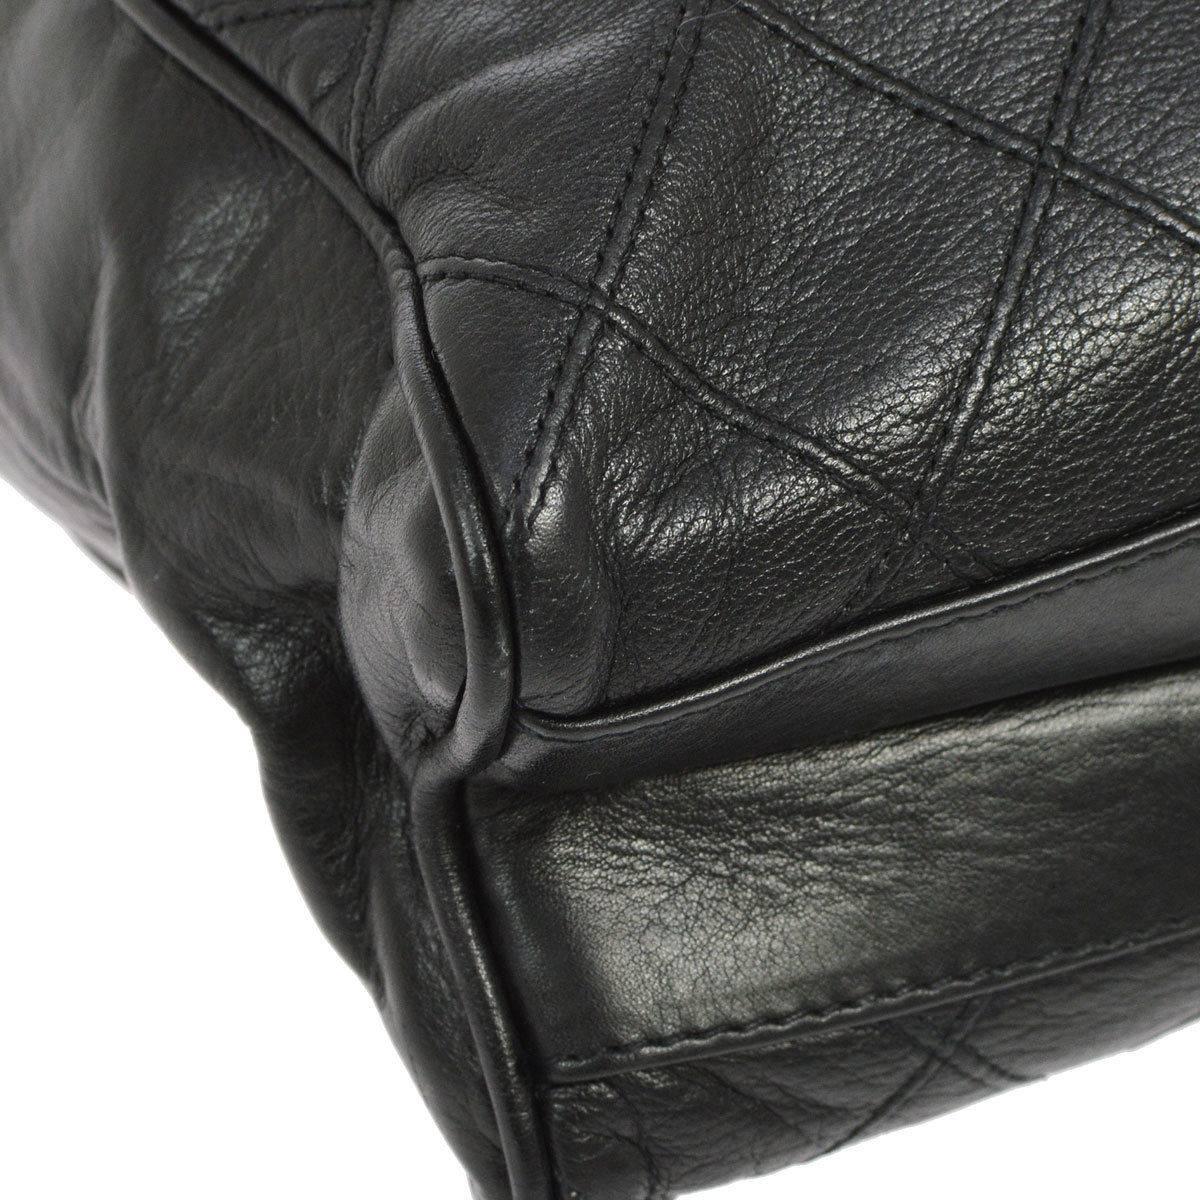 Chanel Vintage Black Leather Quilted Carryall Shopper Tote Shoulder Bag 1